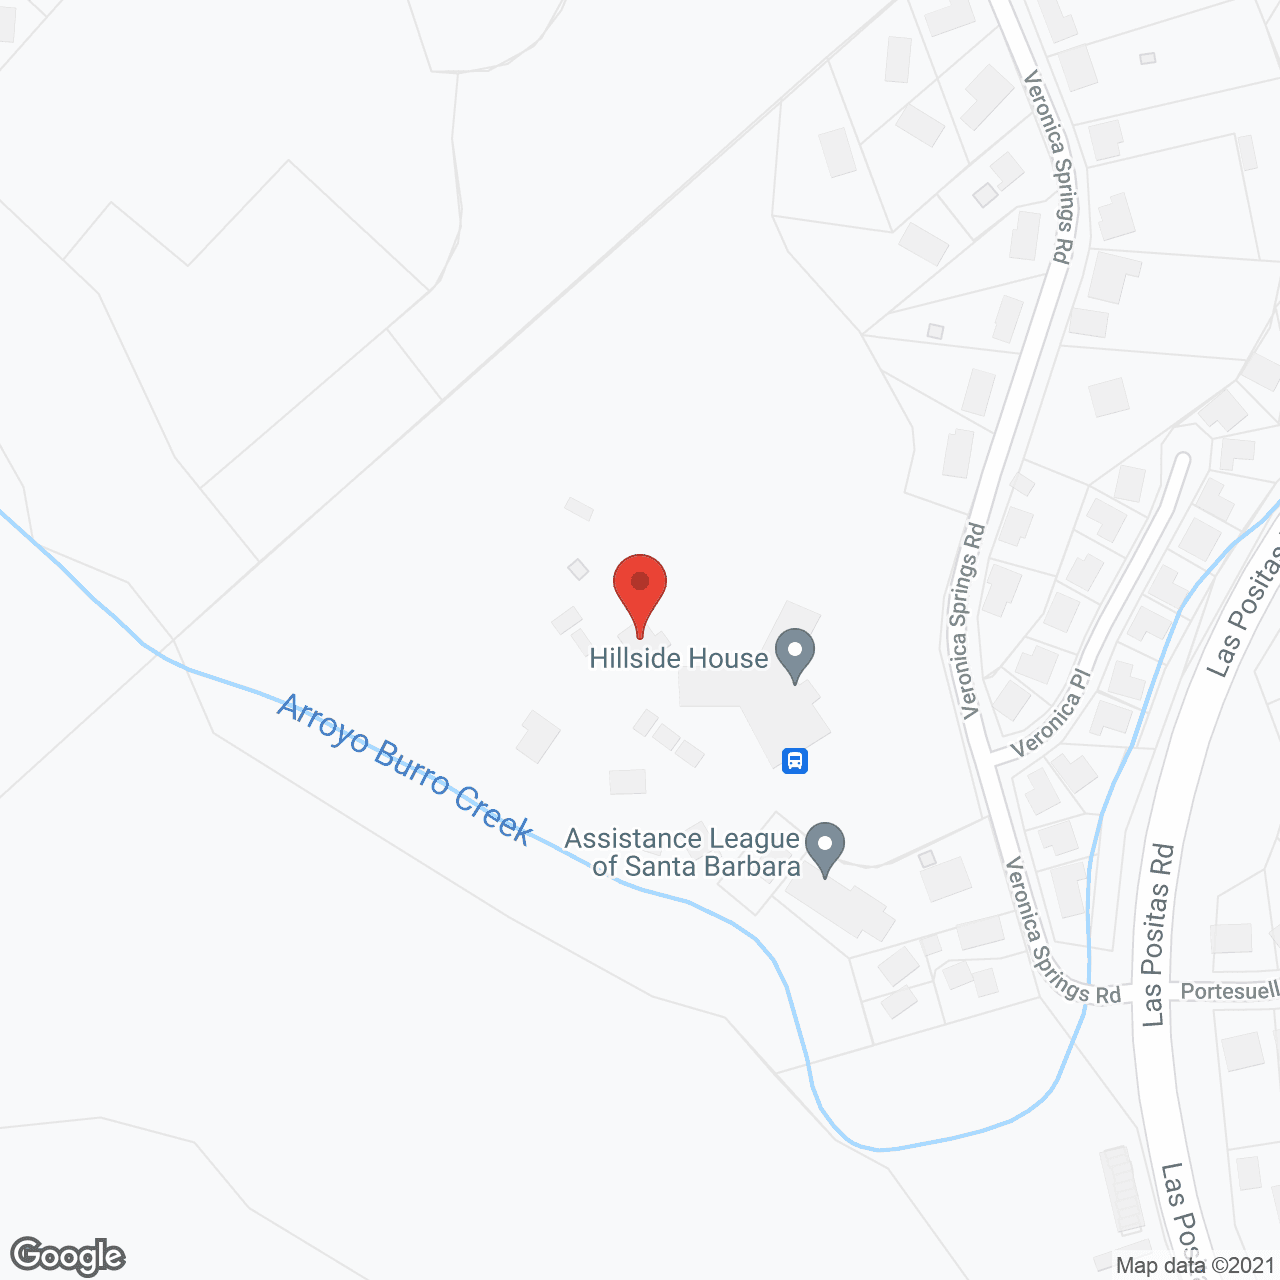 Hillside House in google map